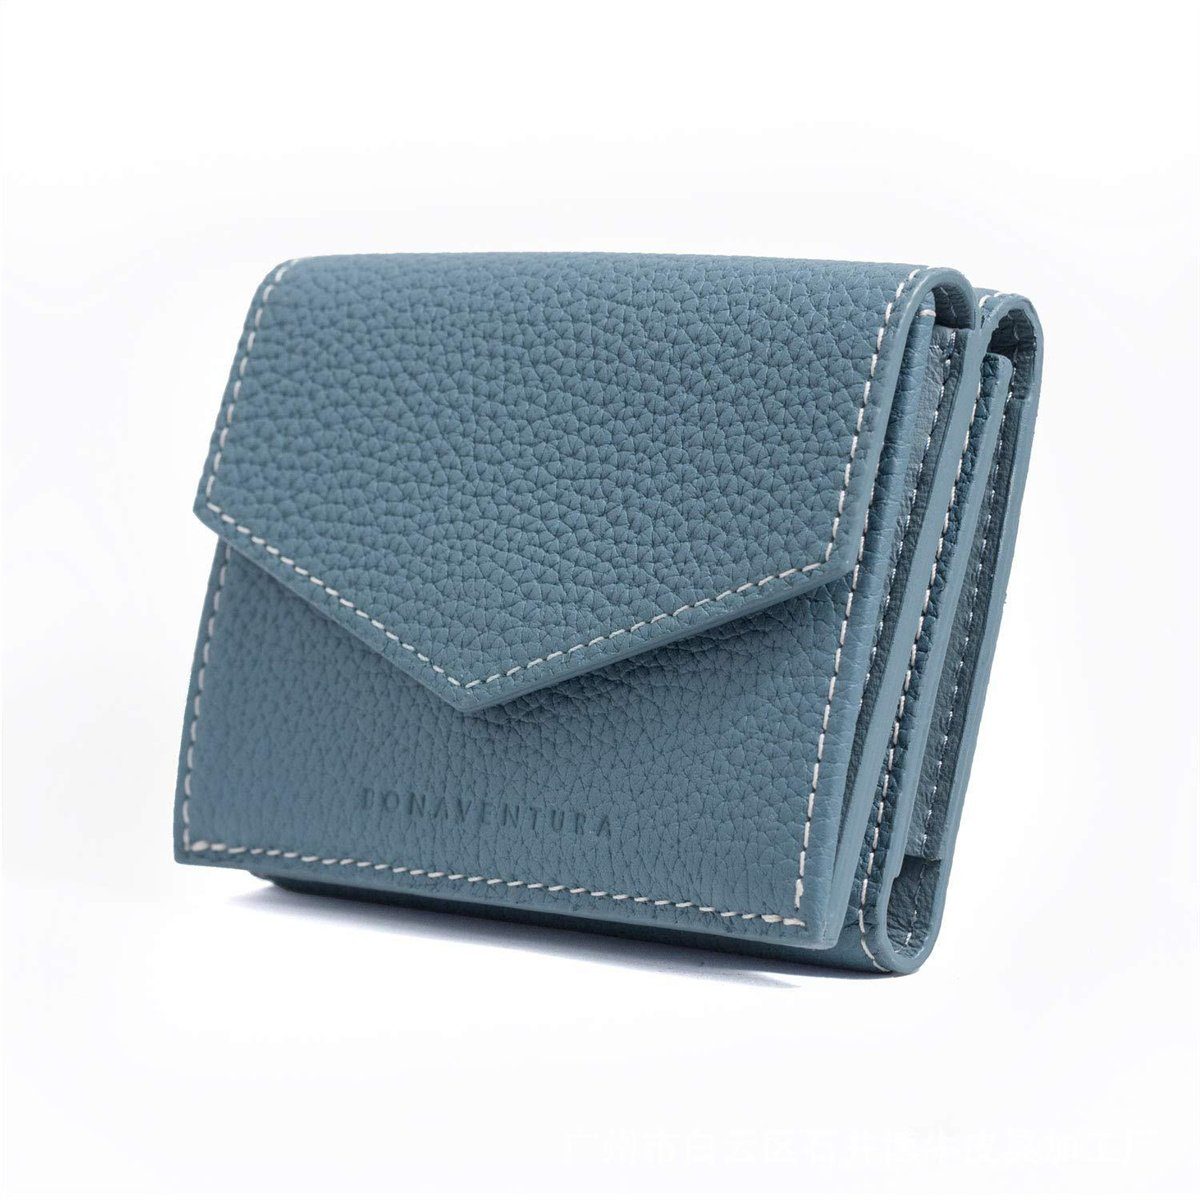 Tragbare Lederbrieftasche Blau mit selected carefully mehreren Kartenfächern vertikale Brieftasche